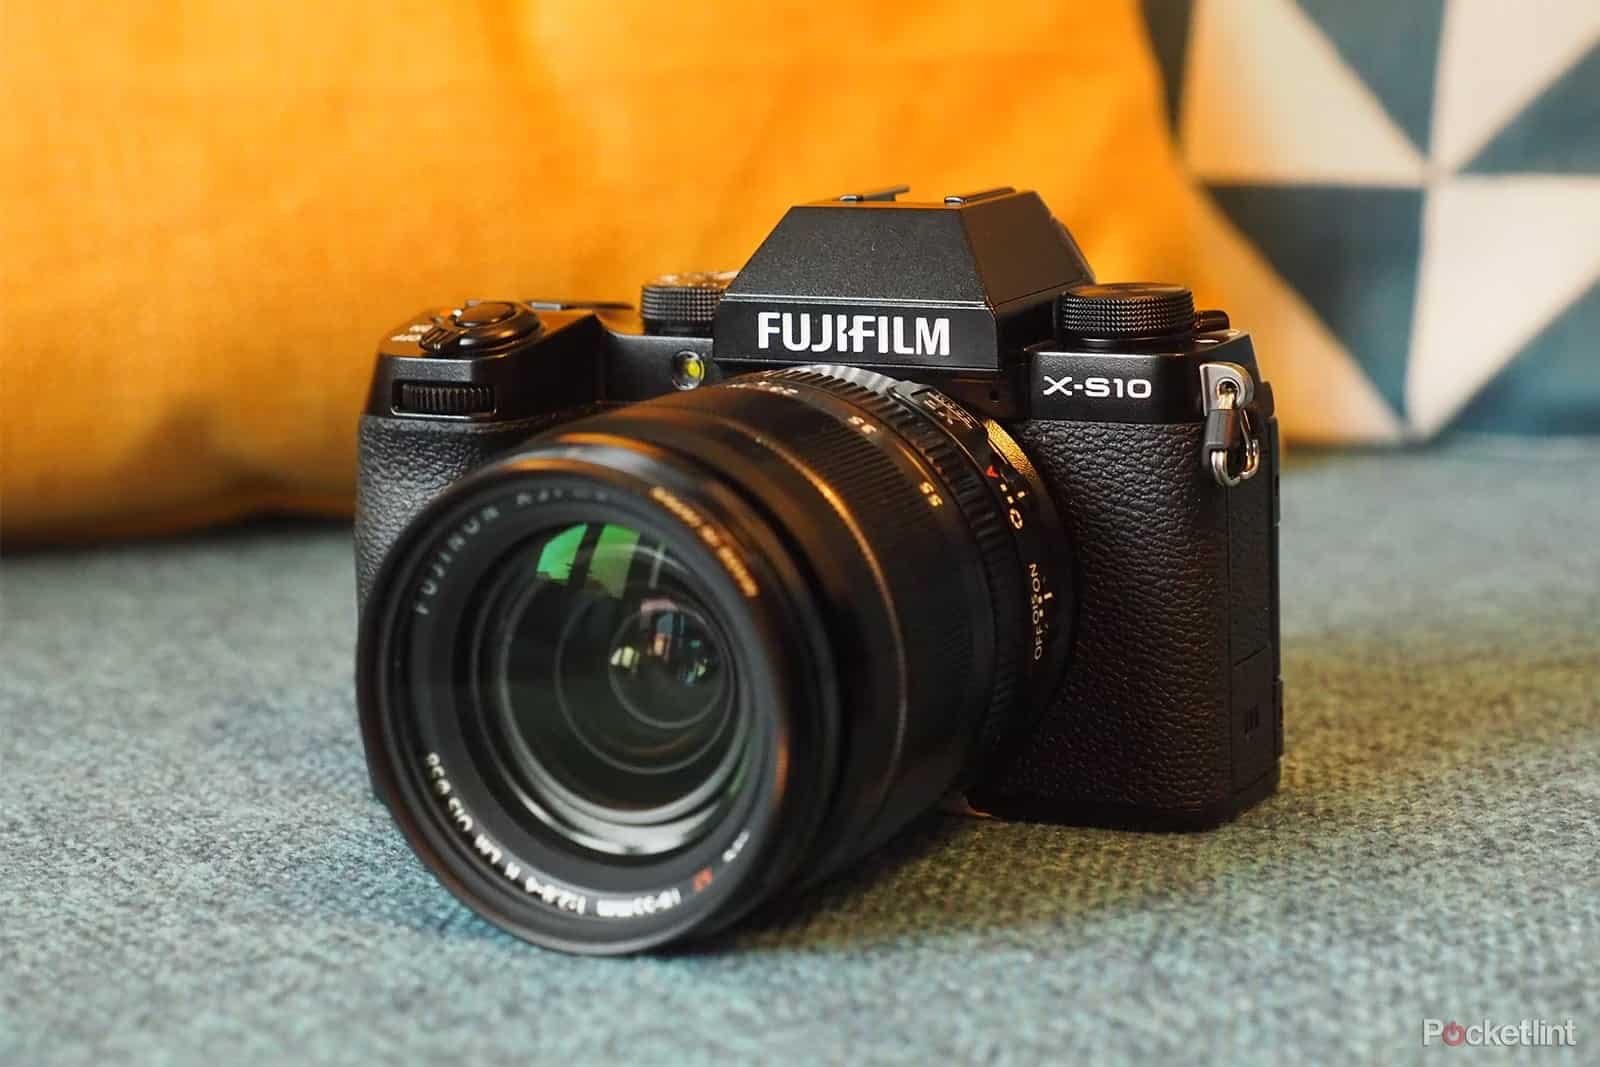 Fujifilm-X-S10